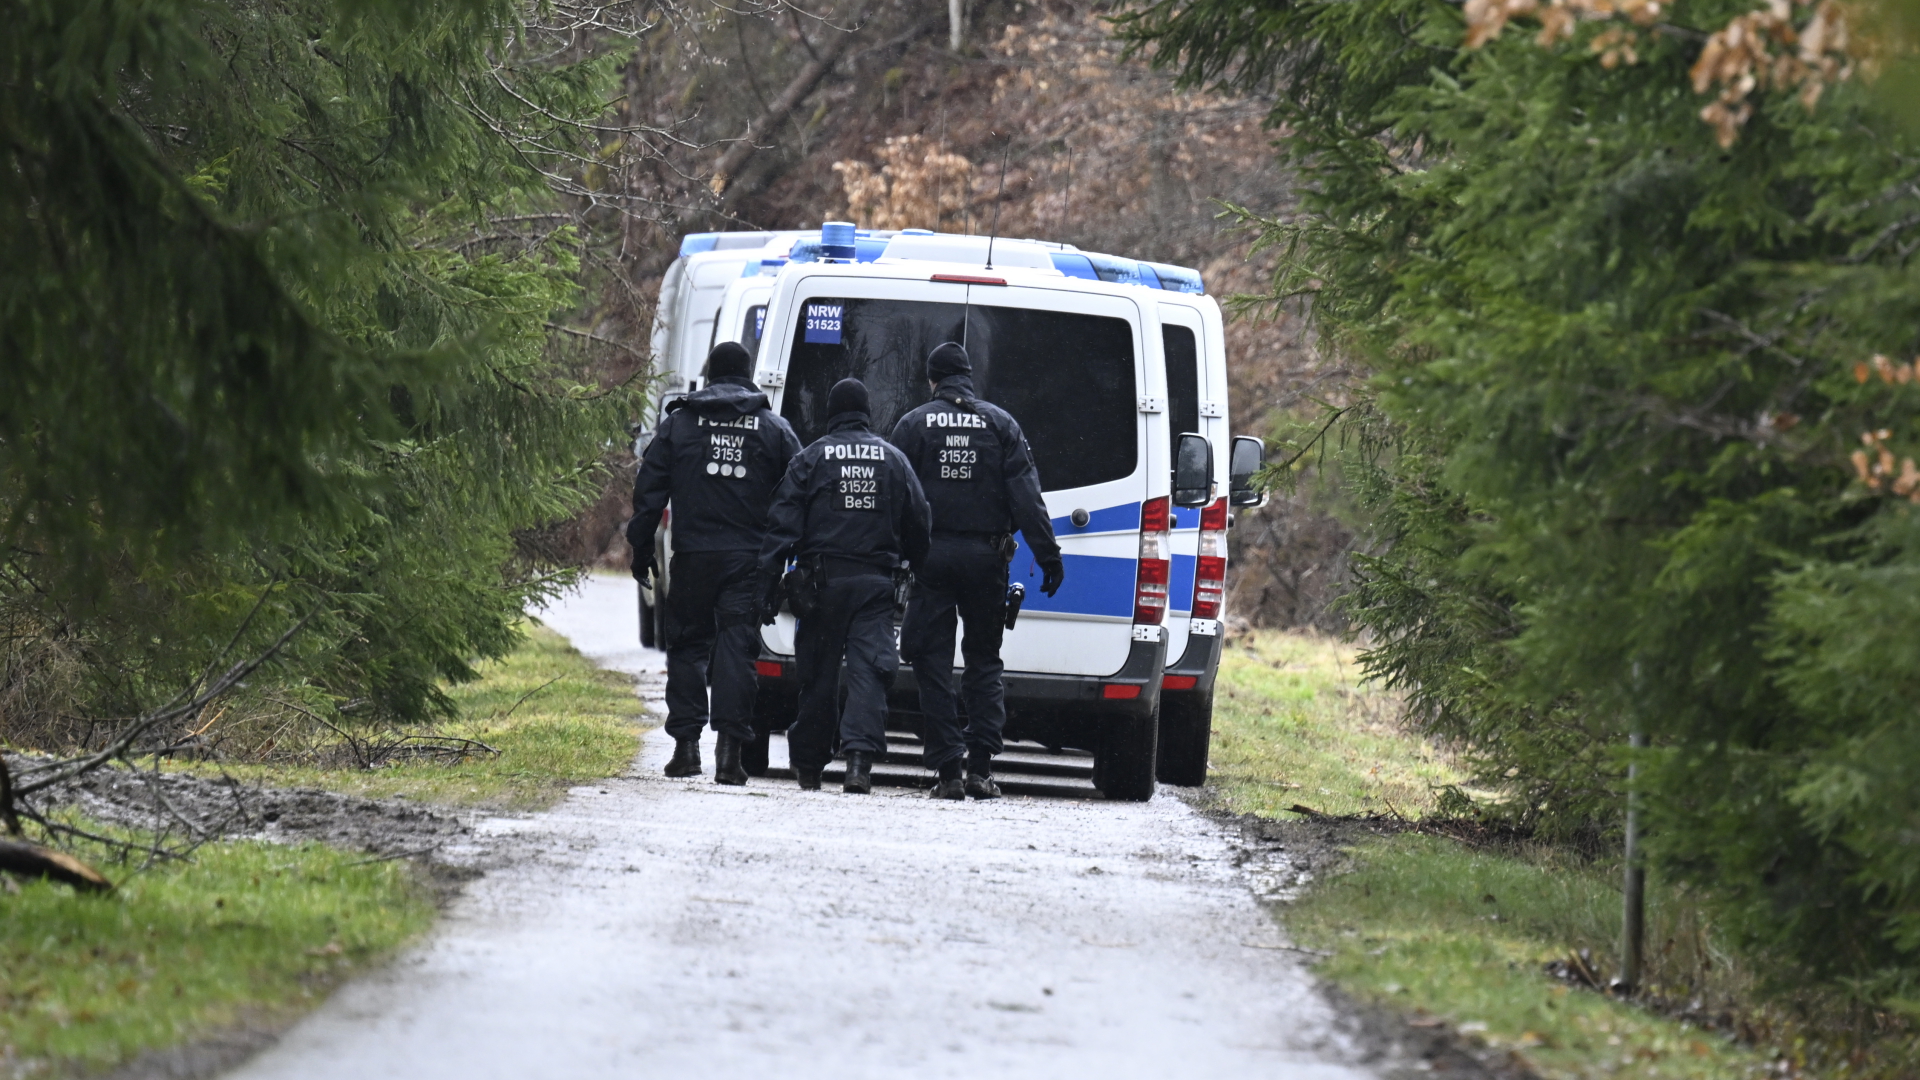 Polizisten suchen in Freudenberg in der Nähe des Fundorts des ermordeten Mädchens Luise nach weiteren Hinweisen. | dpa